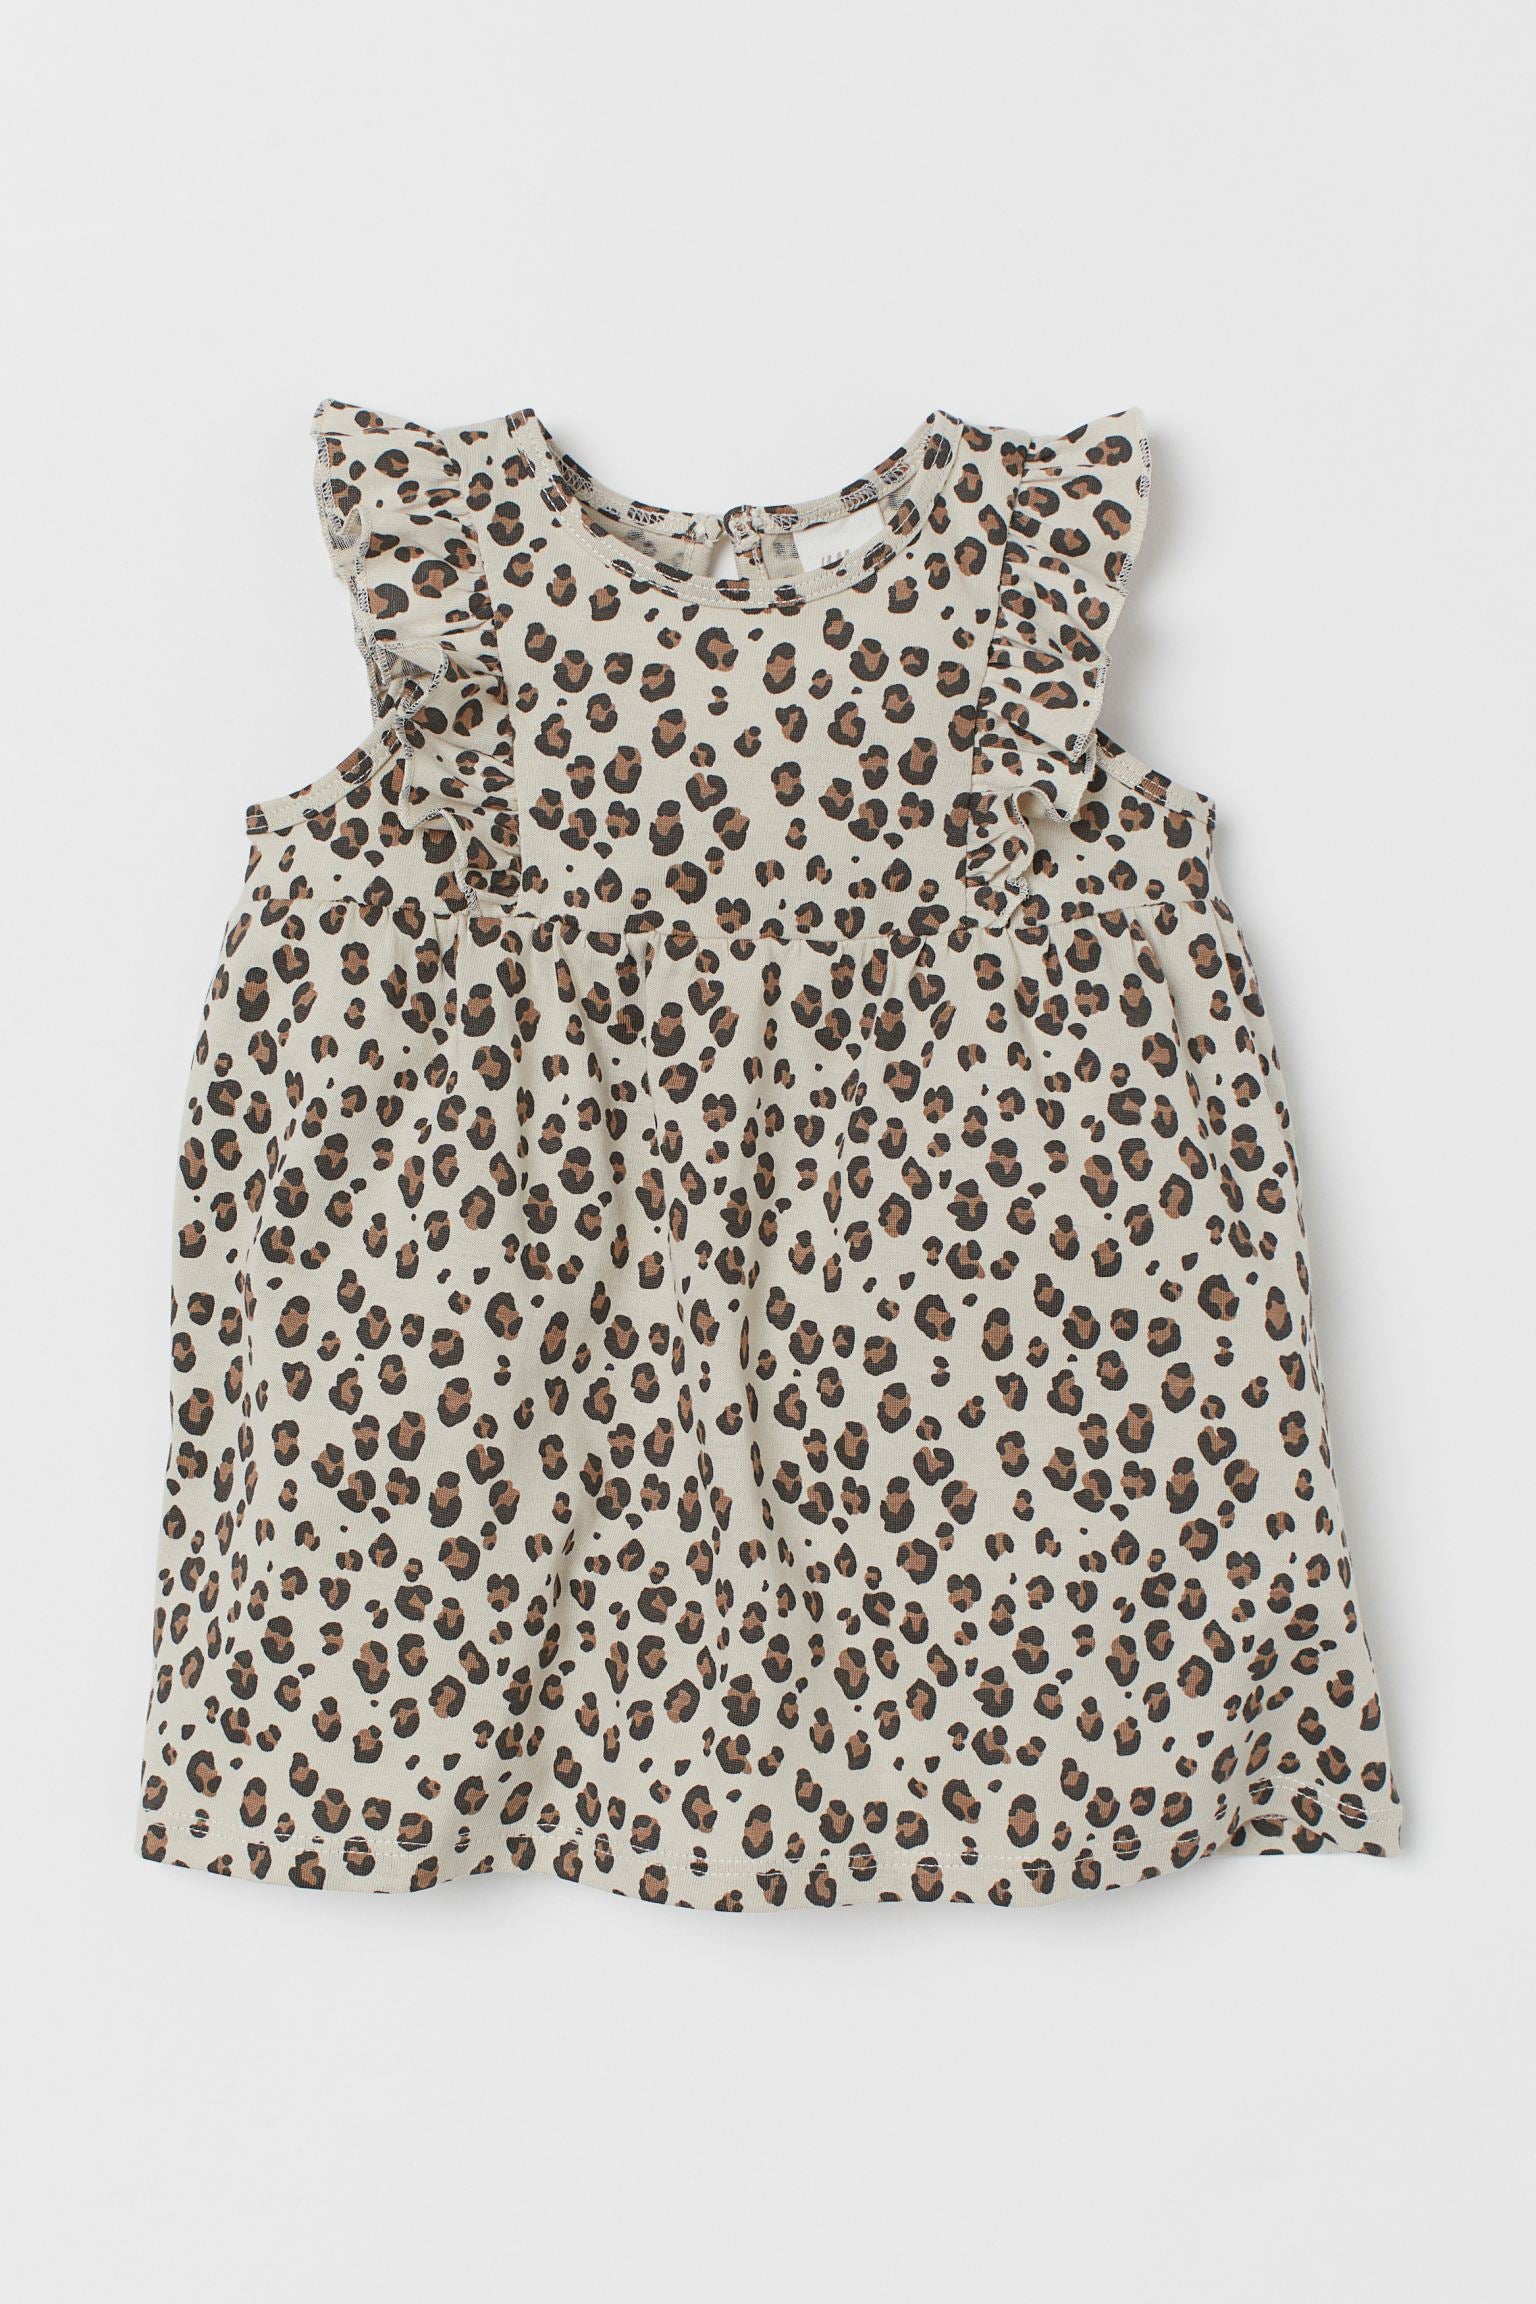 Flounce - Trimmed Jersey Dress - Cheetah